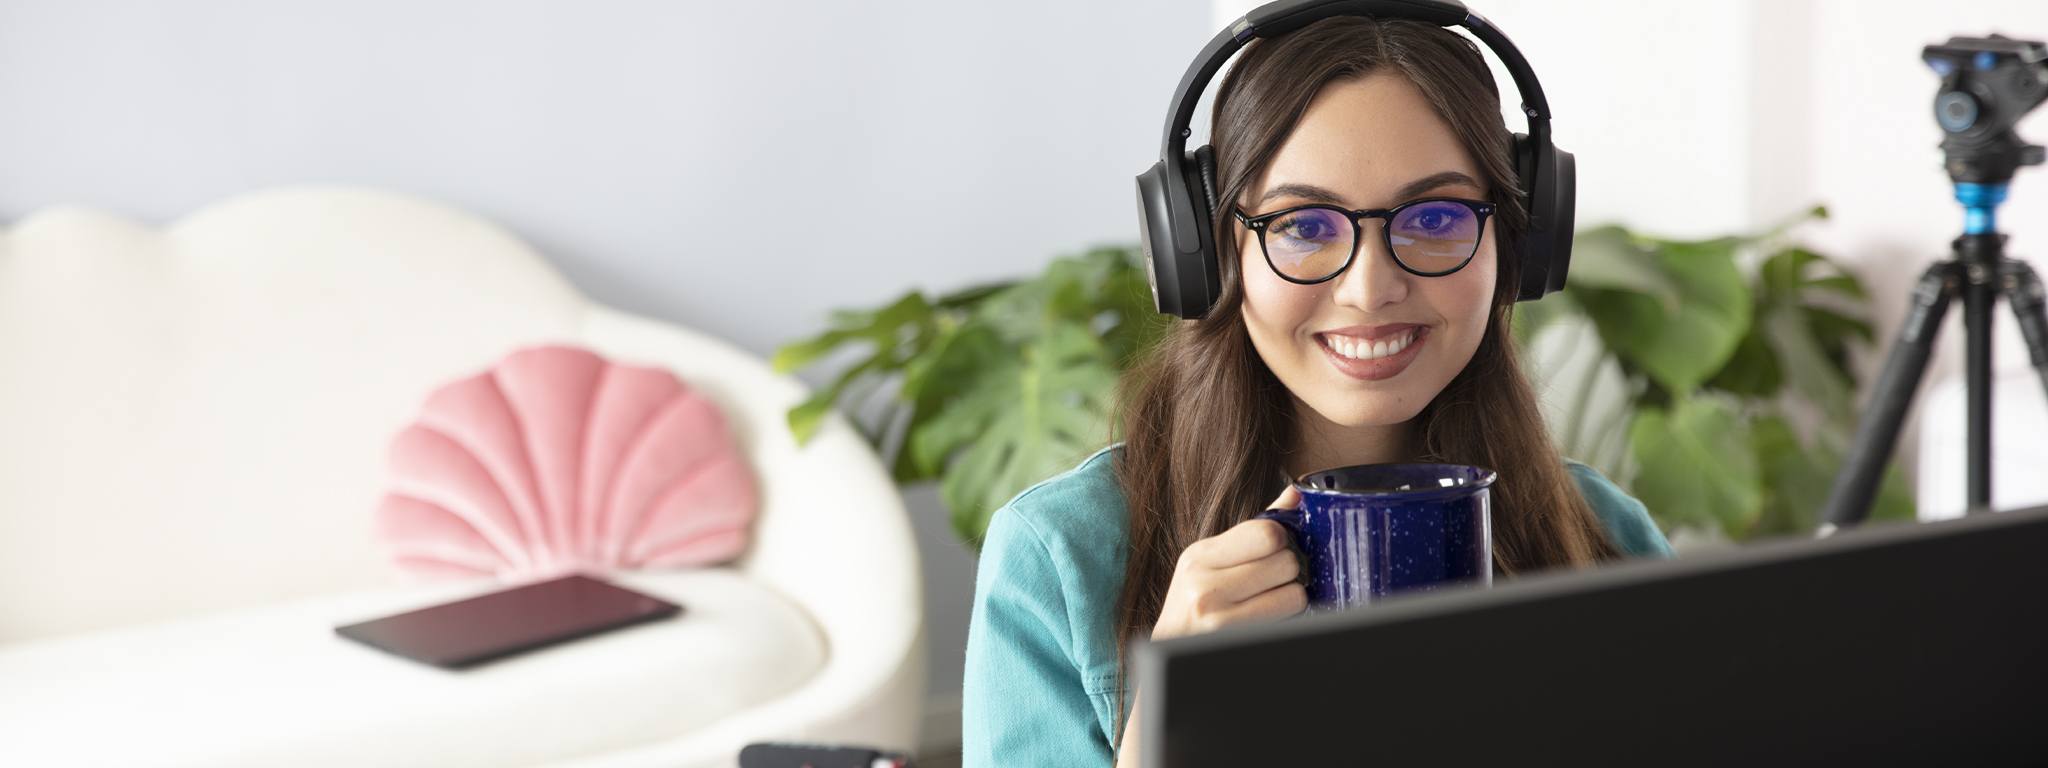 Immagine di una ragazza che tiene in mano una tazza blu mentre guarda al suo monitor nell’ufficio di casa